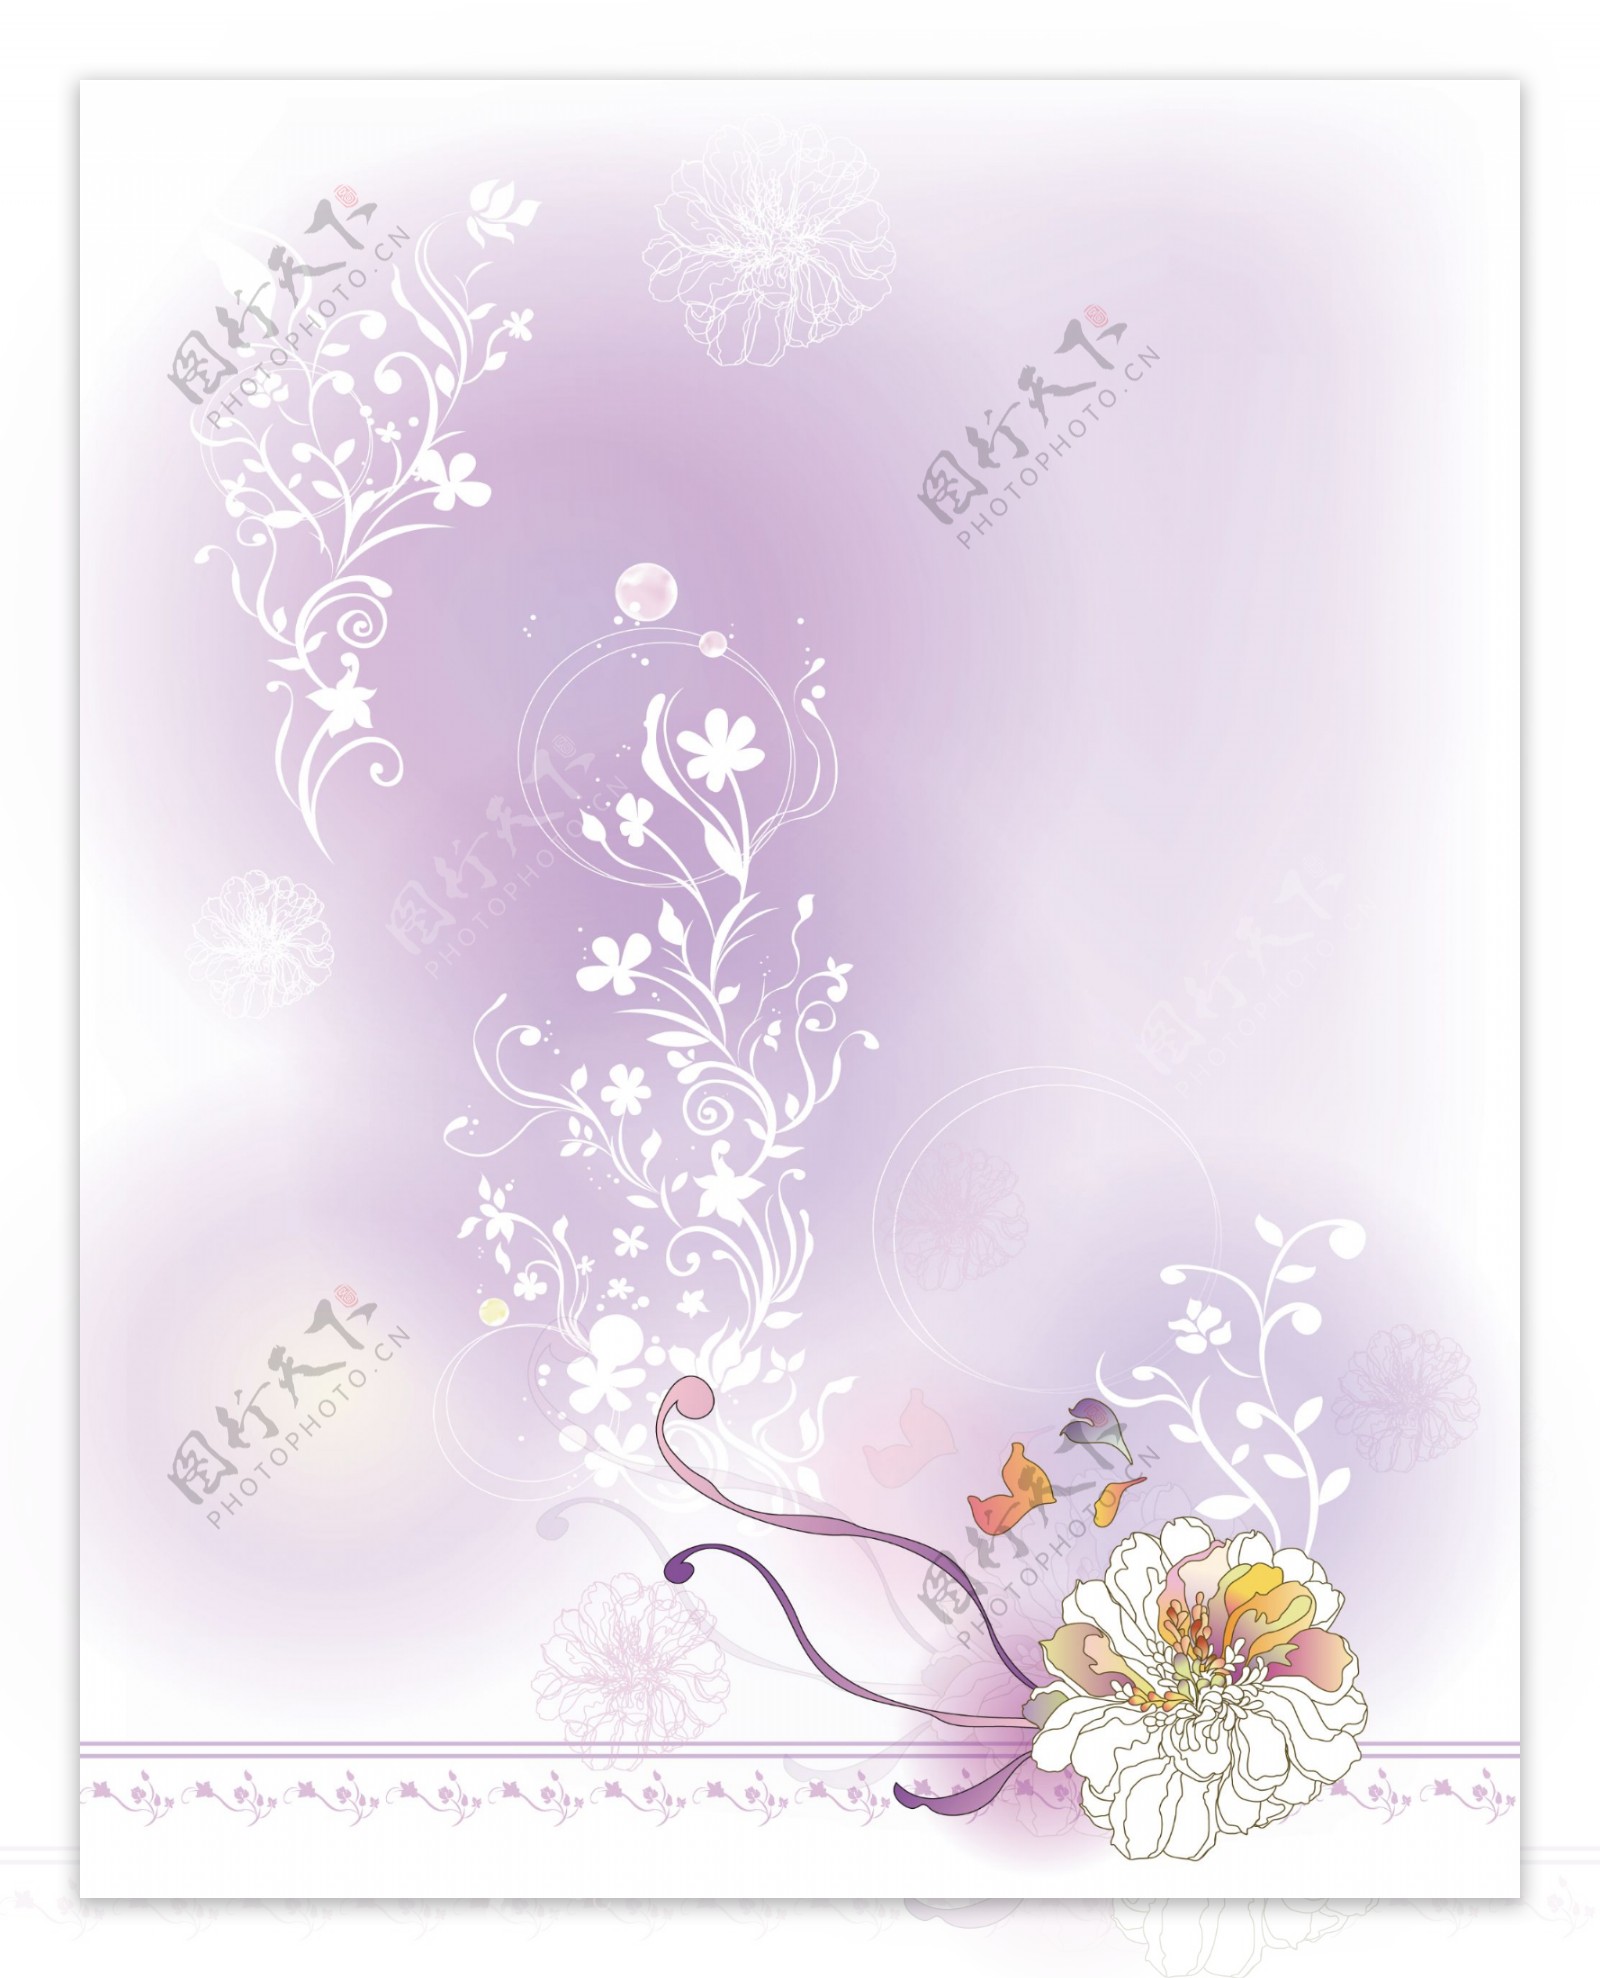 白色菊花淡紫色图片